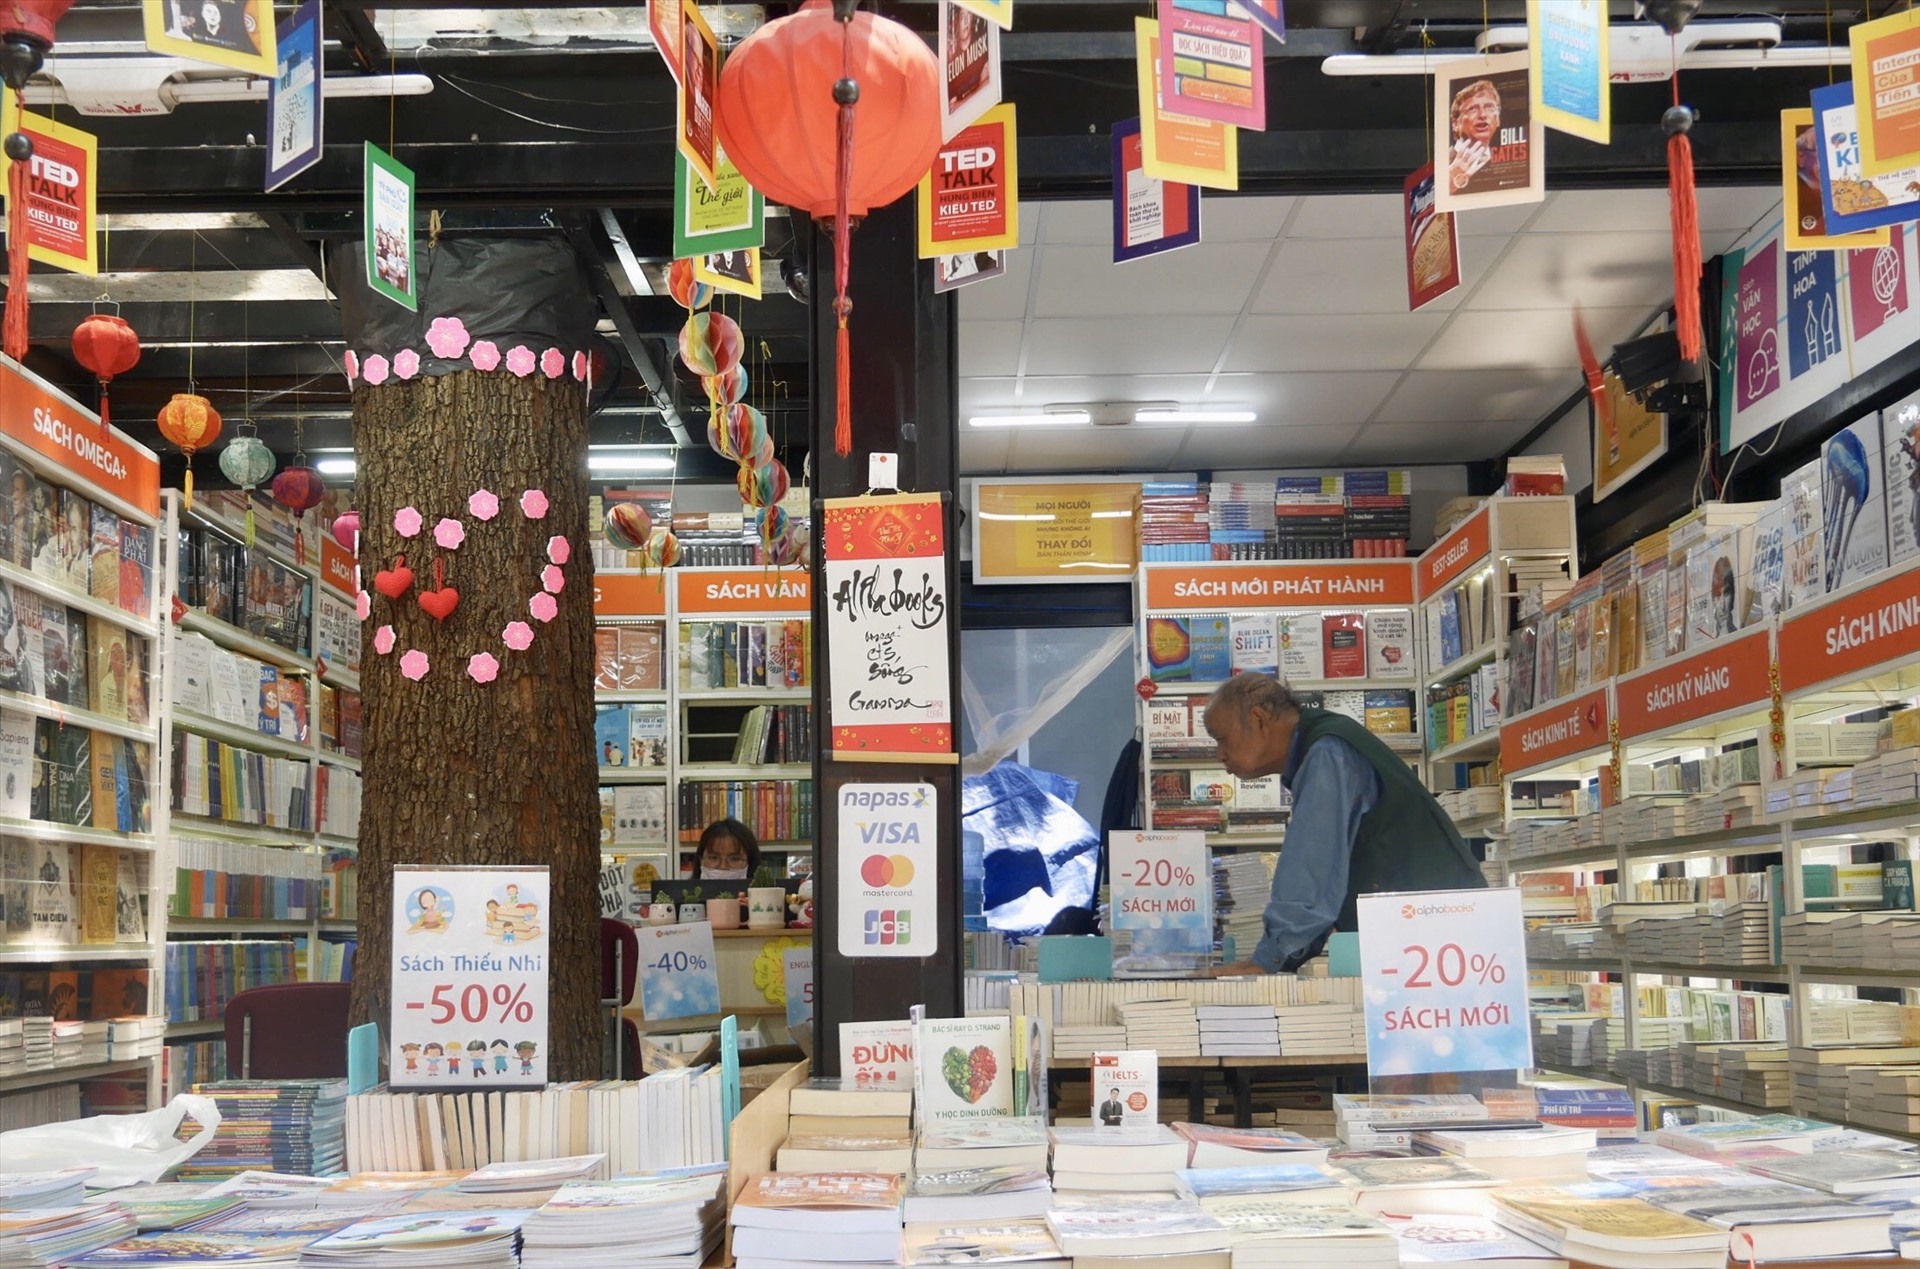 Nhiều kệ hàng trưng bày các loại sách giảm giá để thu hút người mua Hầu hết các  gian hàng đều  có chương trình  giảm giá  các loại sách để thu hút người mua